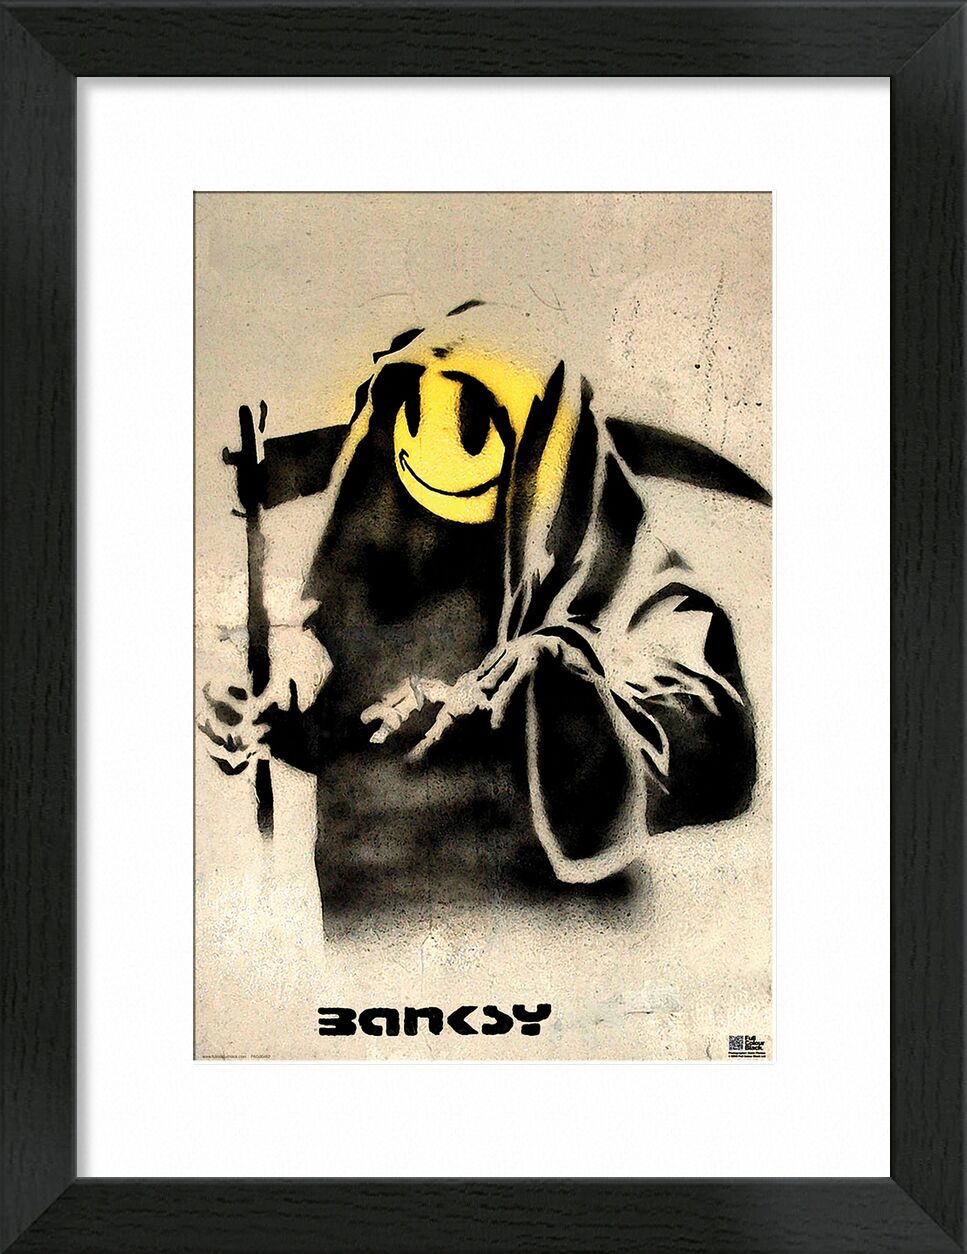 The Reaper - BANKSY desde Bellas artes, Prodi Art, Banksy, pintada, cortacésped, sonriente